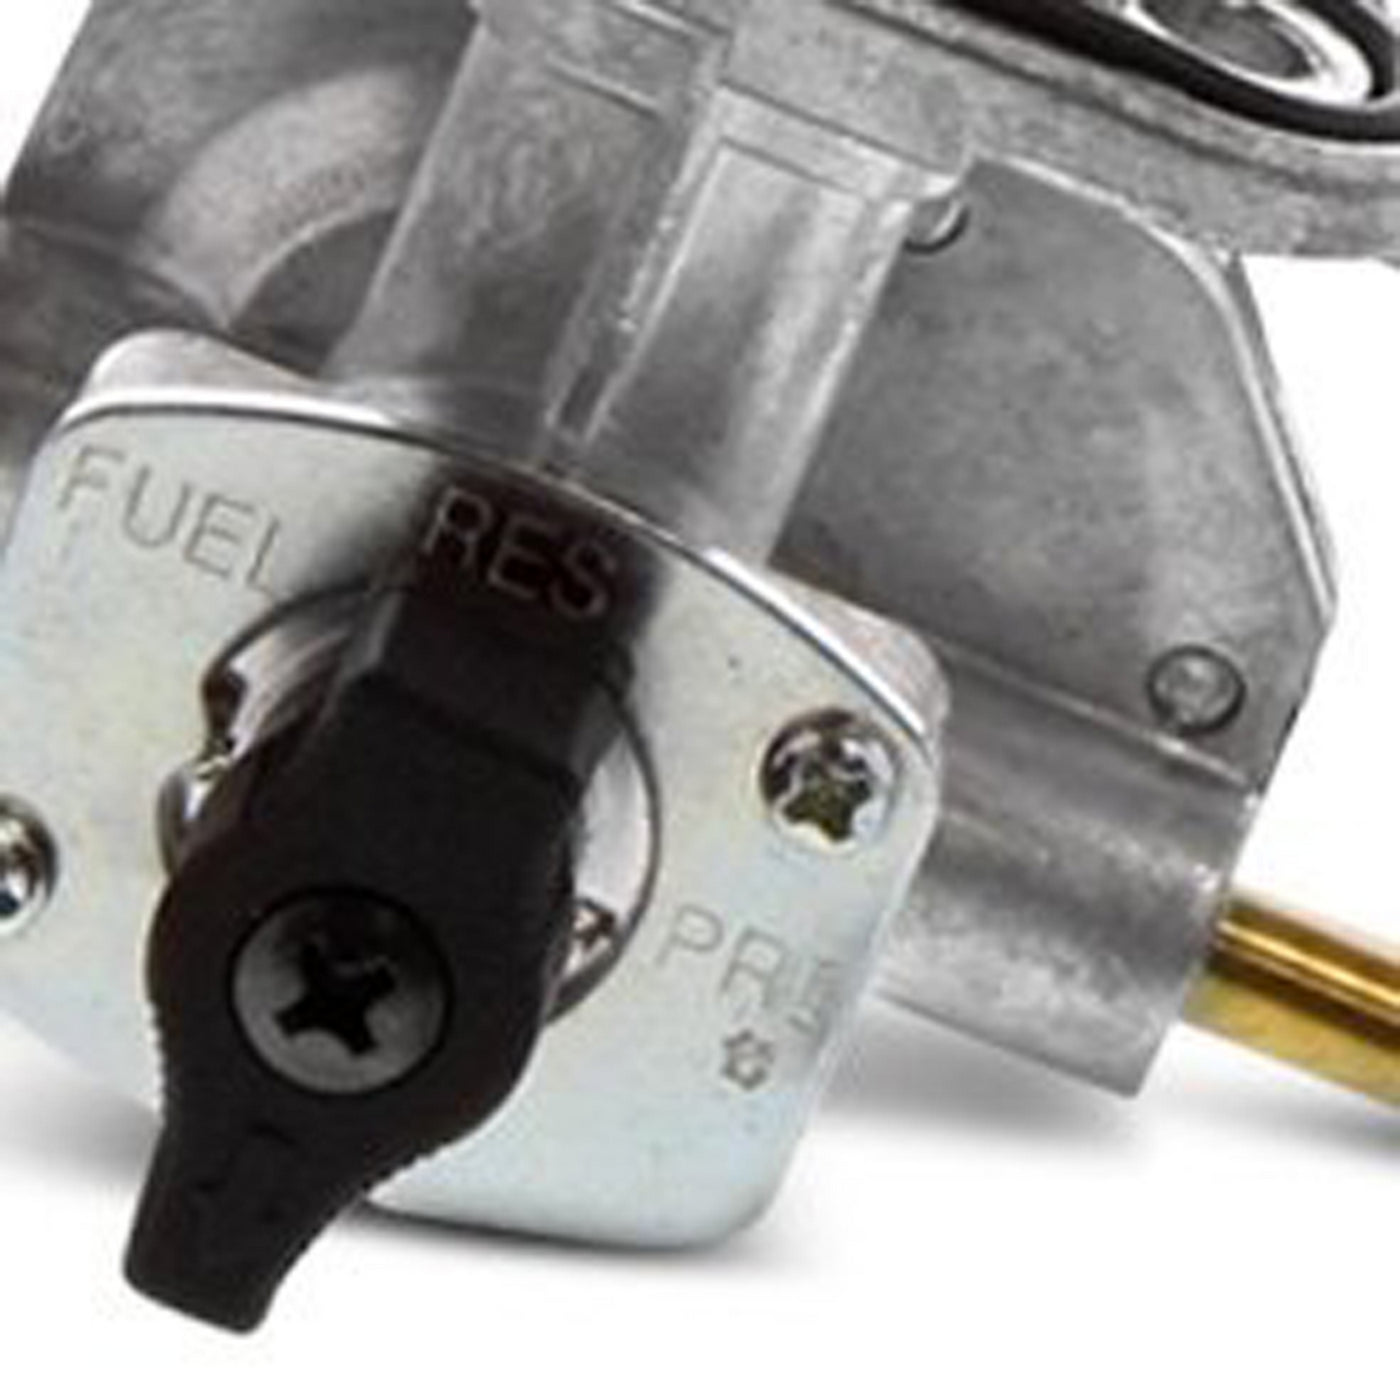 Fuel Star FS101-0173 Fuel Valve Kit #FS101-0173